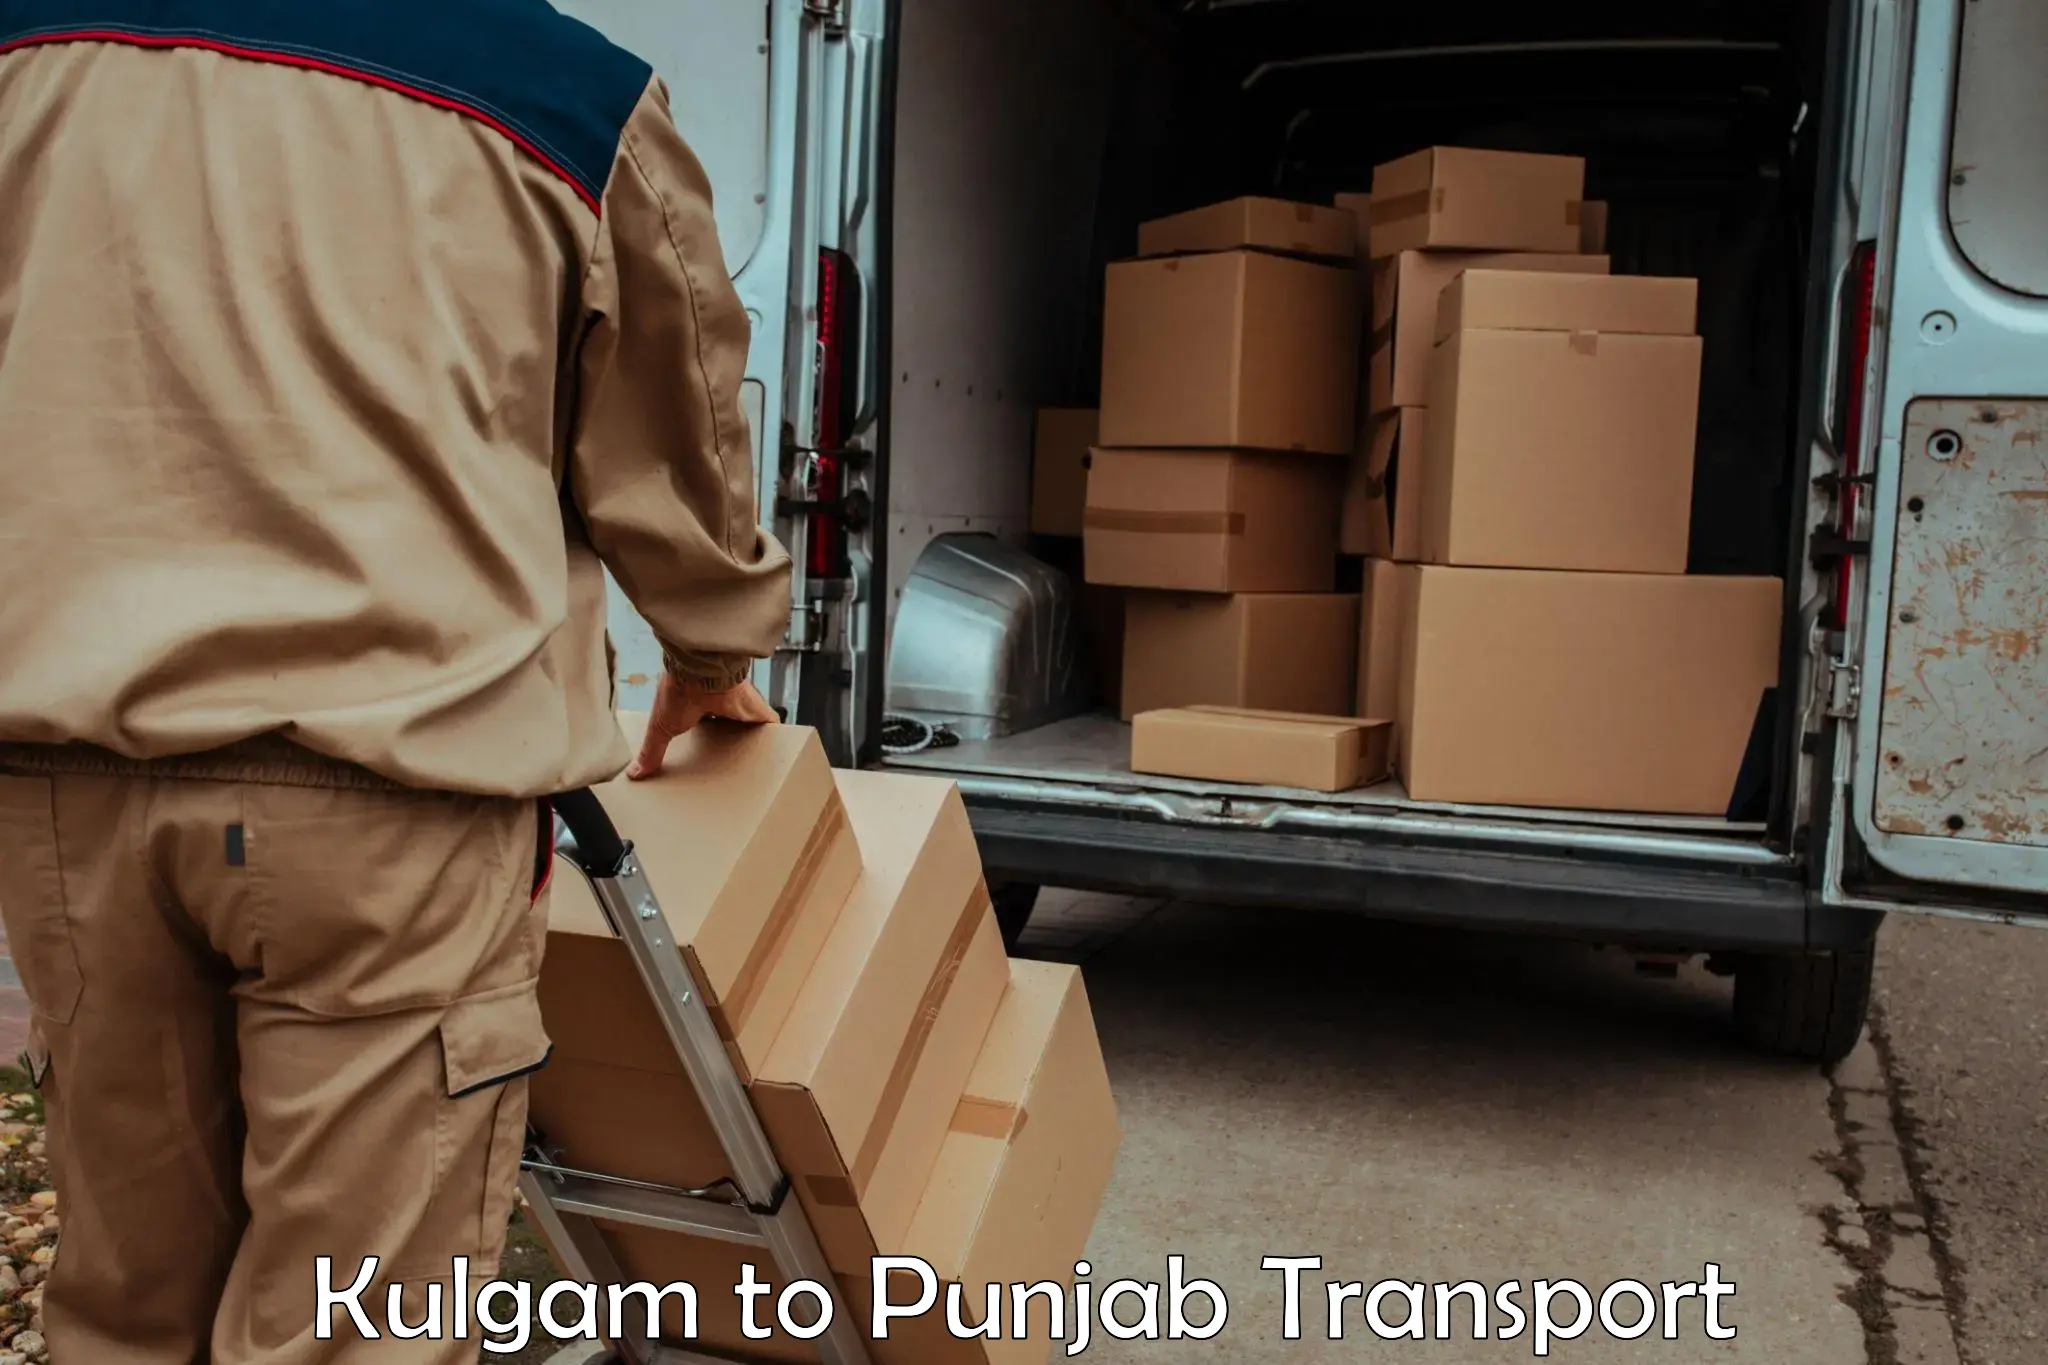 Door to door transport services Kulgam to Gurdaspur